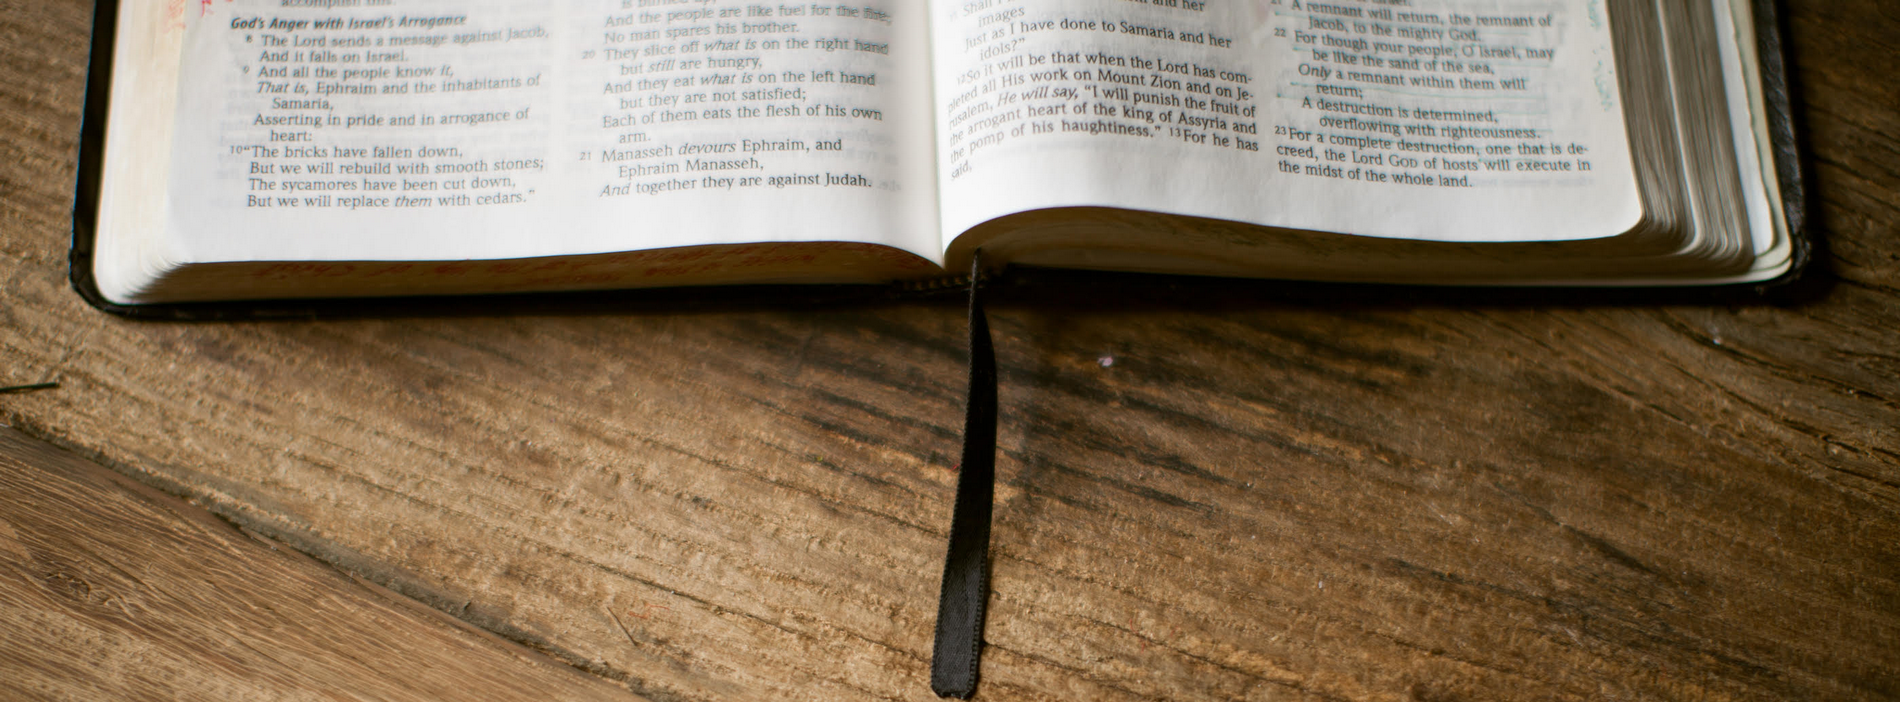 open bible on desk